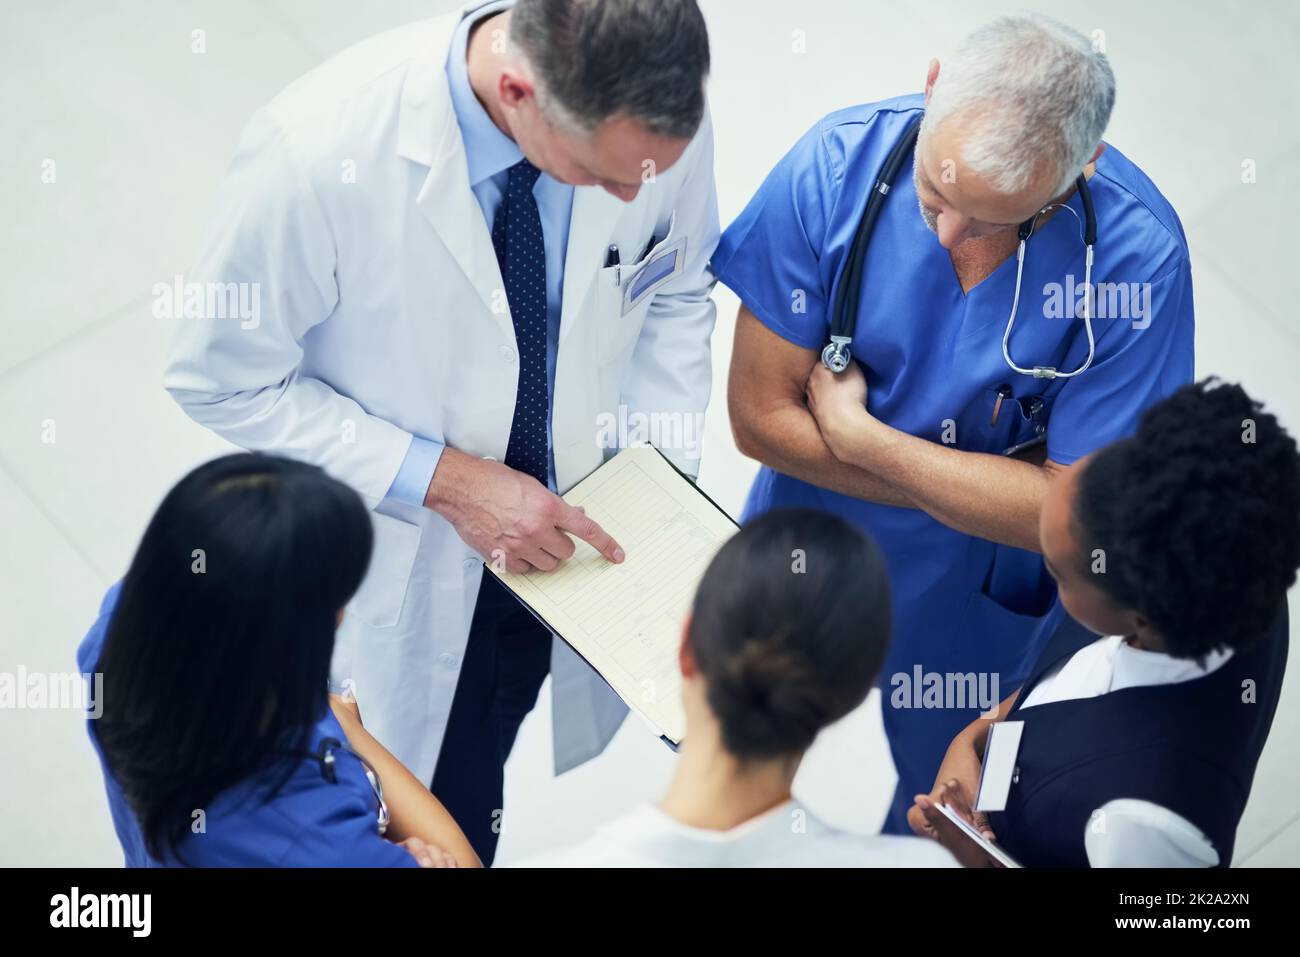 Diskutieren von Diagnosen. Aufnahme einer Gruppe von Ärzten, die sich über eine Krankenakte unterhalten, während sie in einem Krankenhaus stehen. Stockfoto